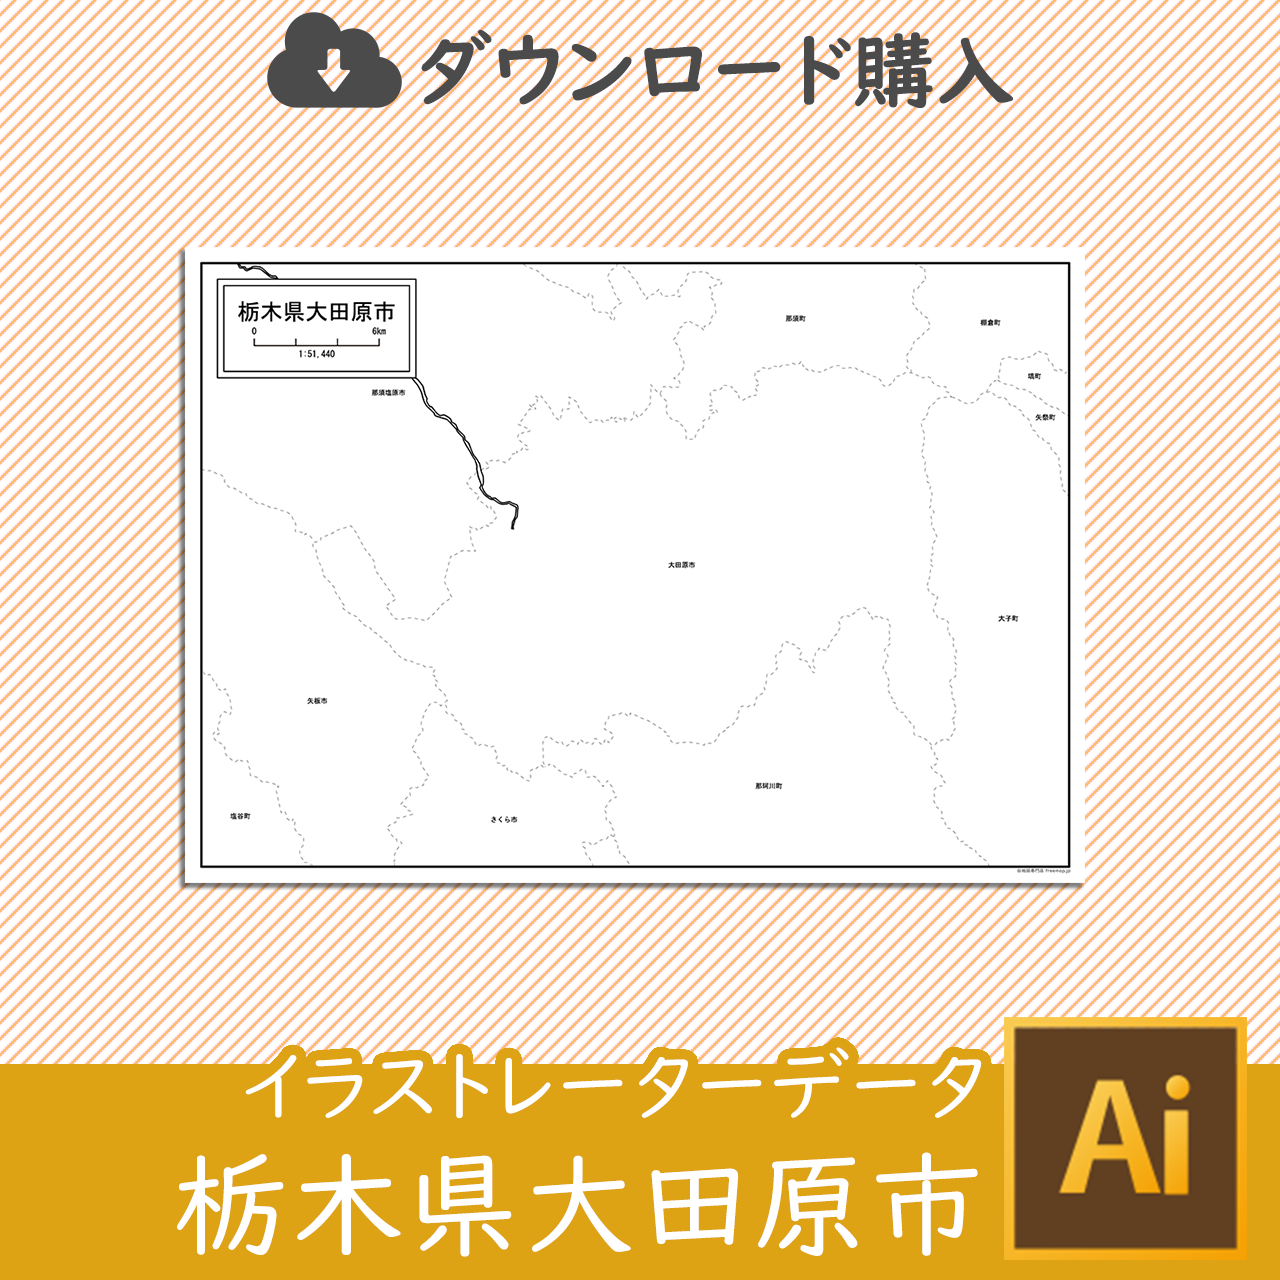 大田原市のaiデータのサムネイル画像